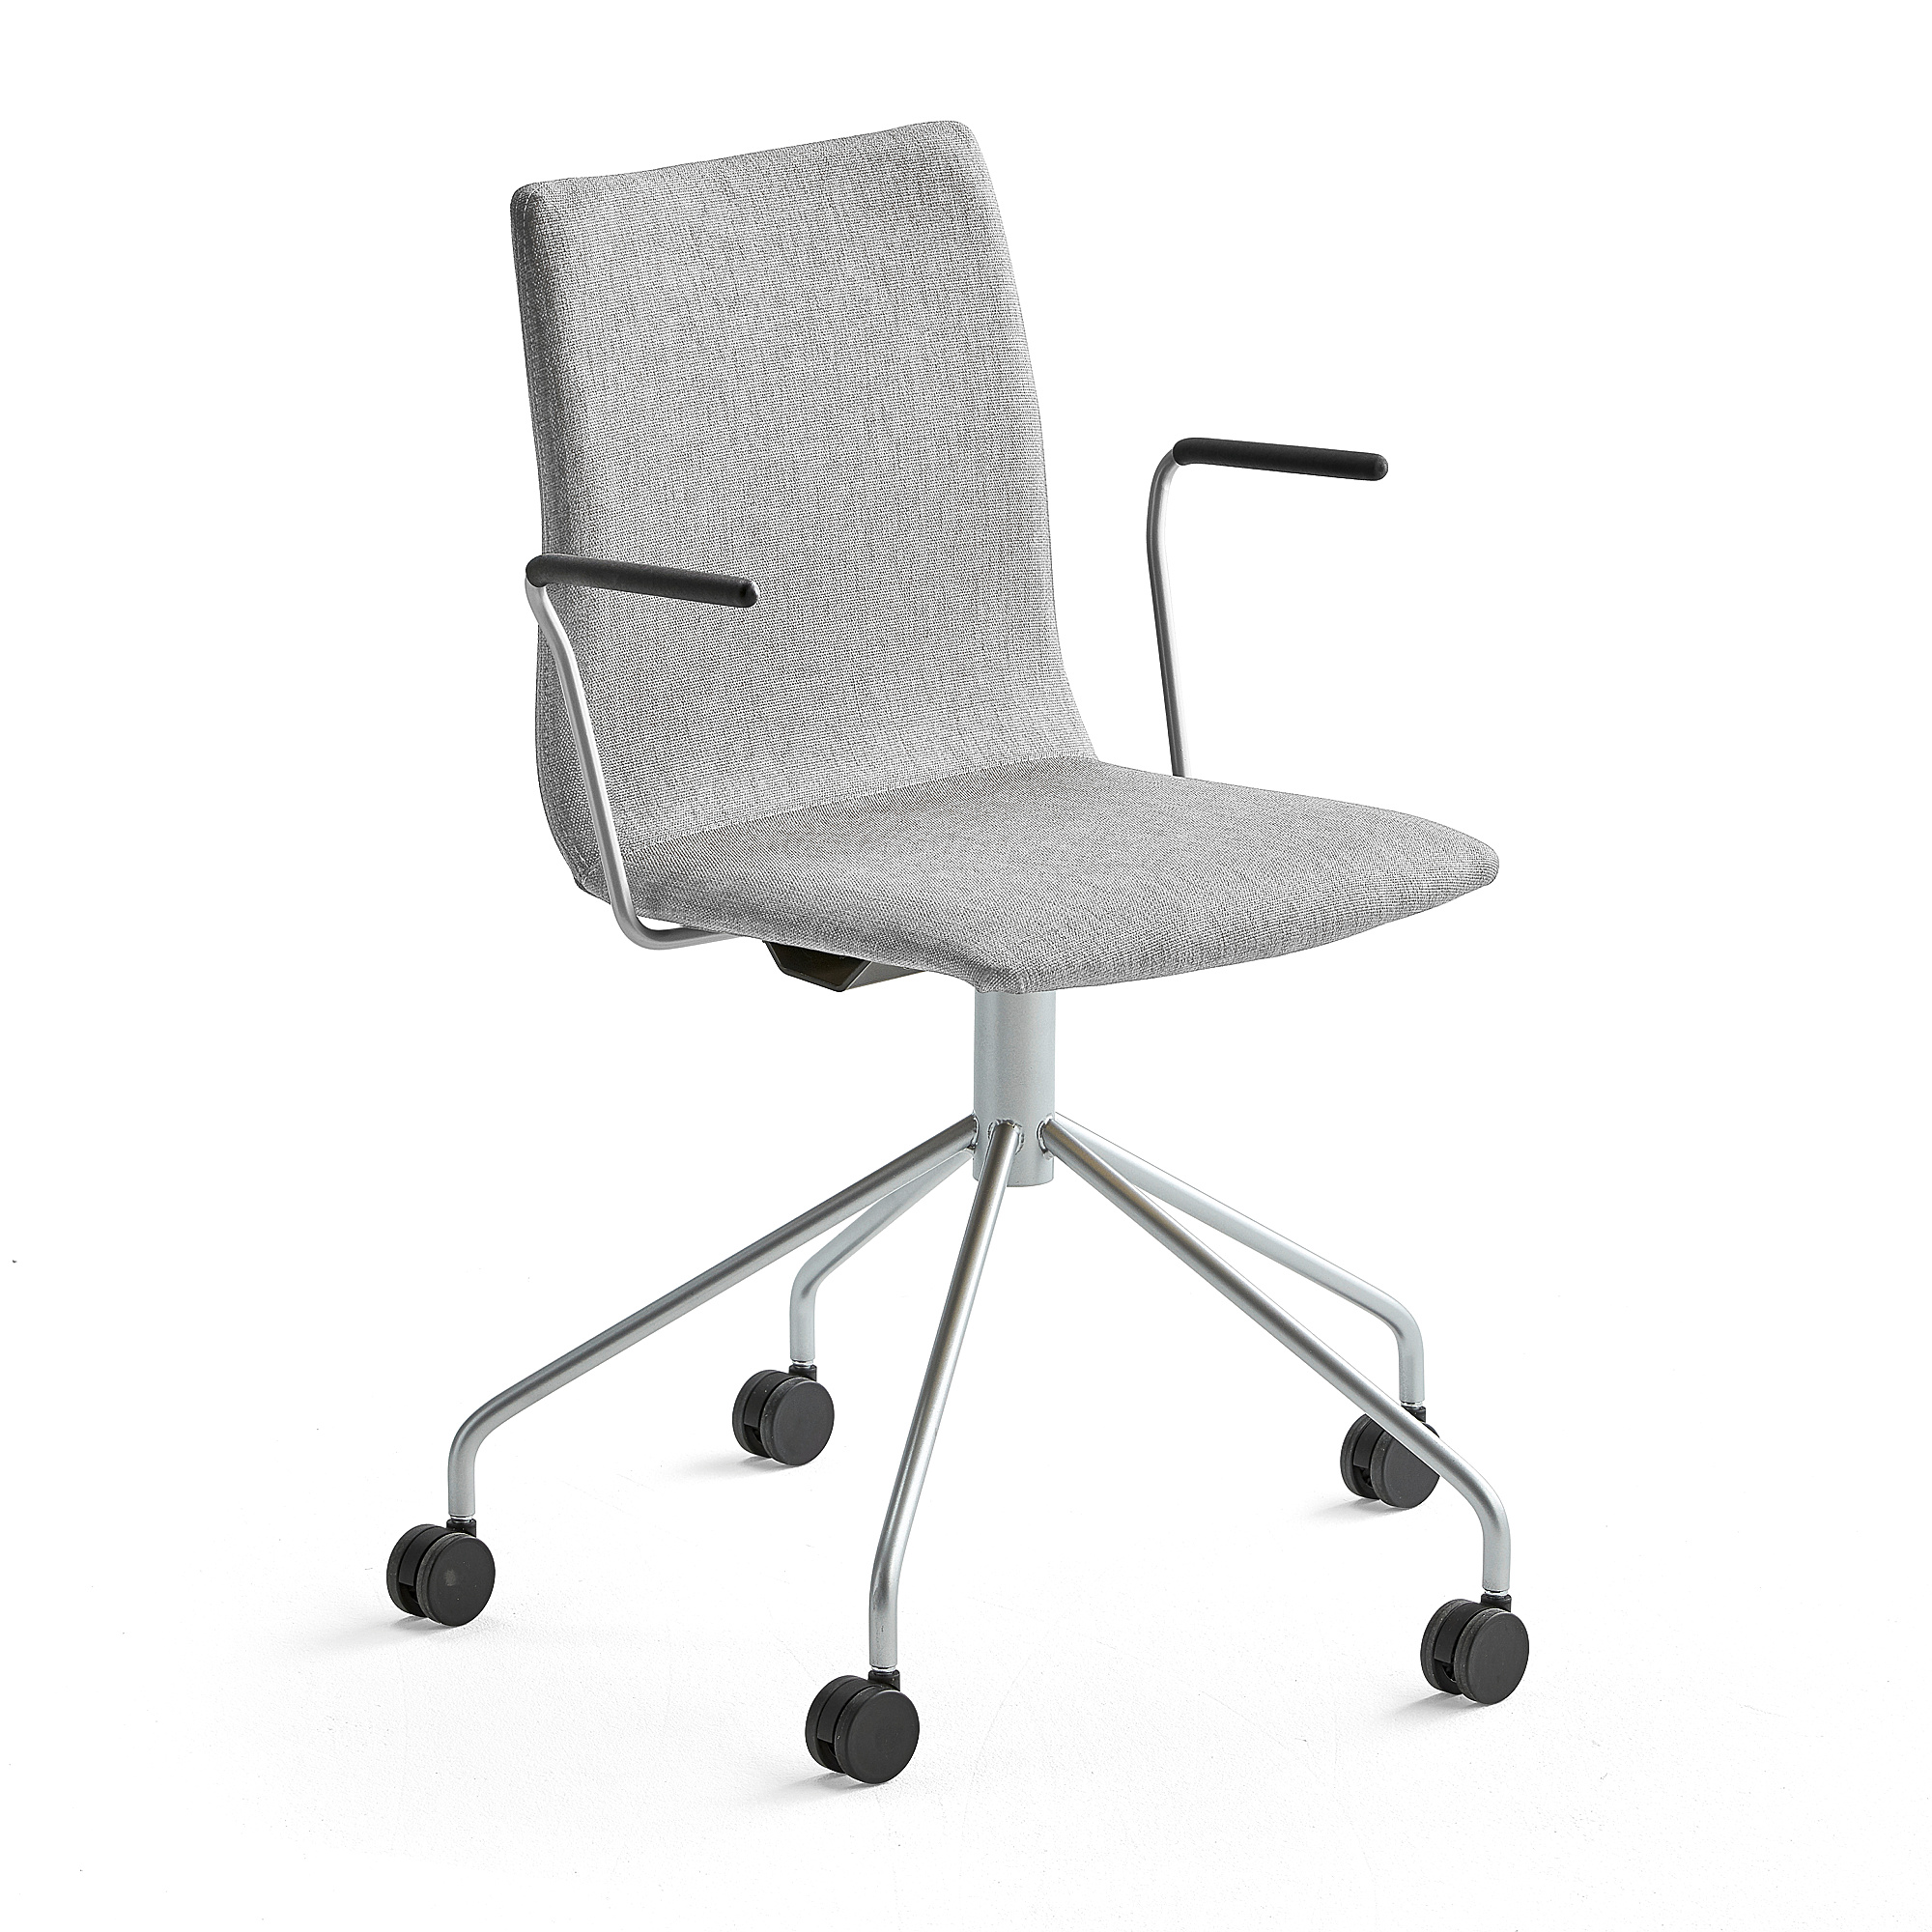 Konferenčná stolička OTTAWA, s kolieskami a opierkami rúk, strieborná/šedá